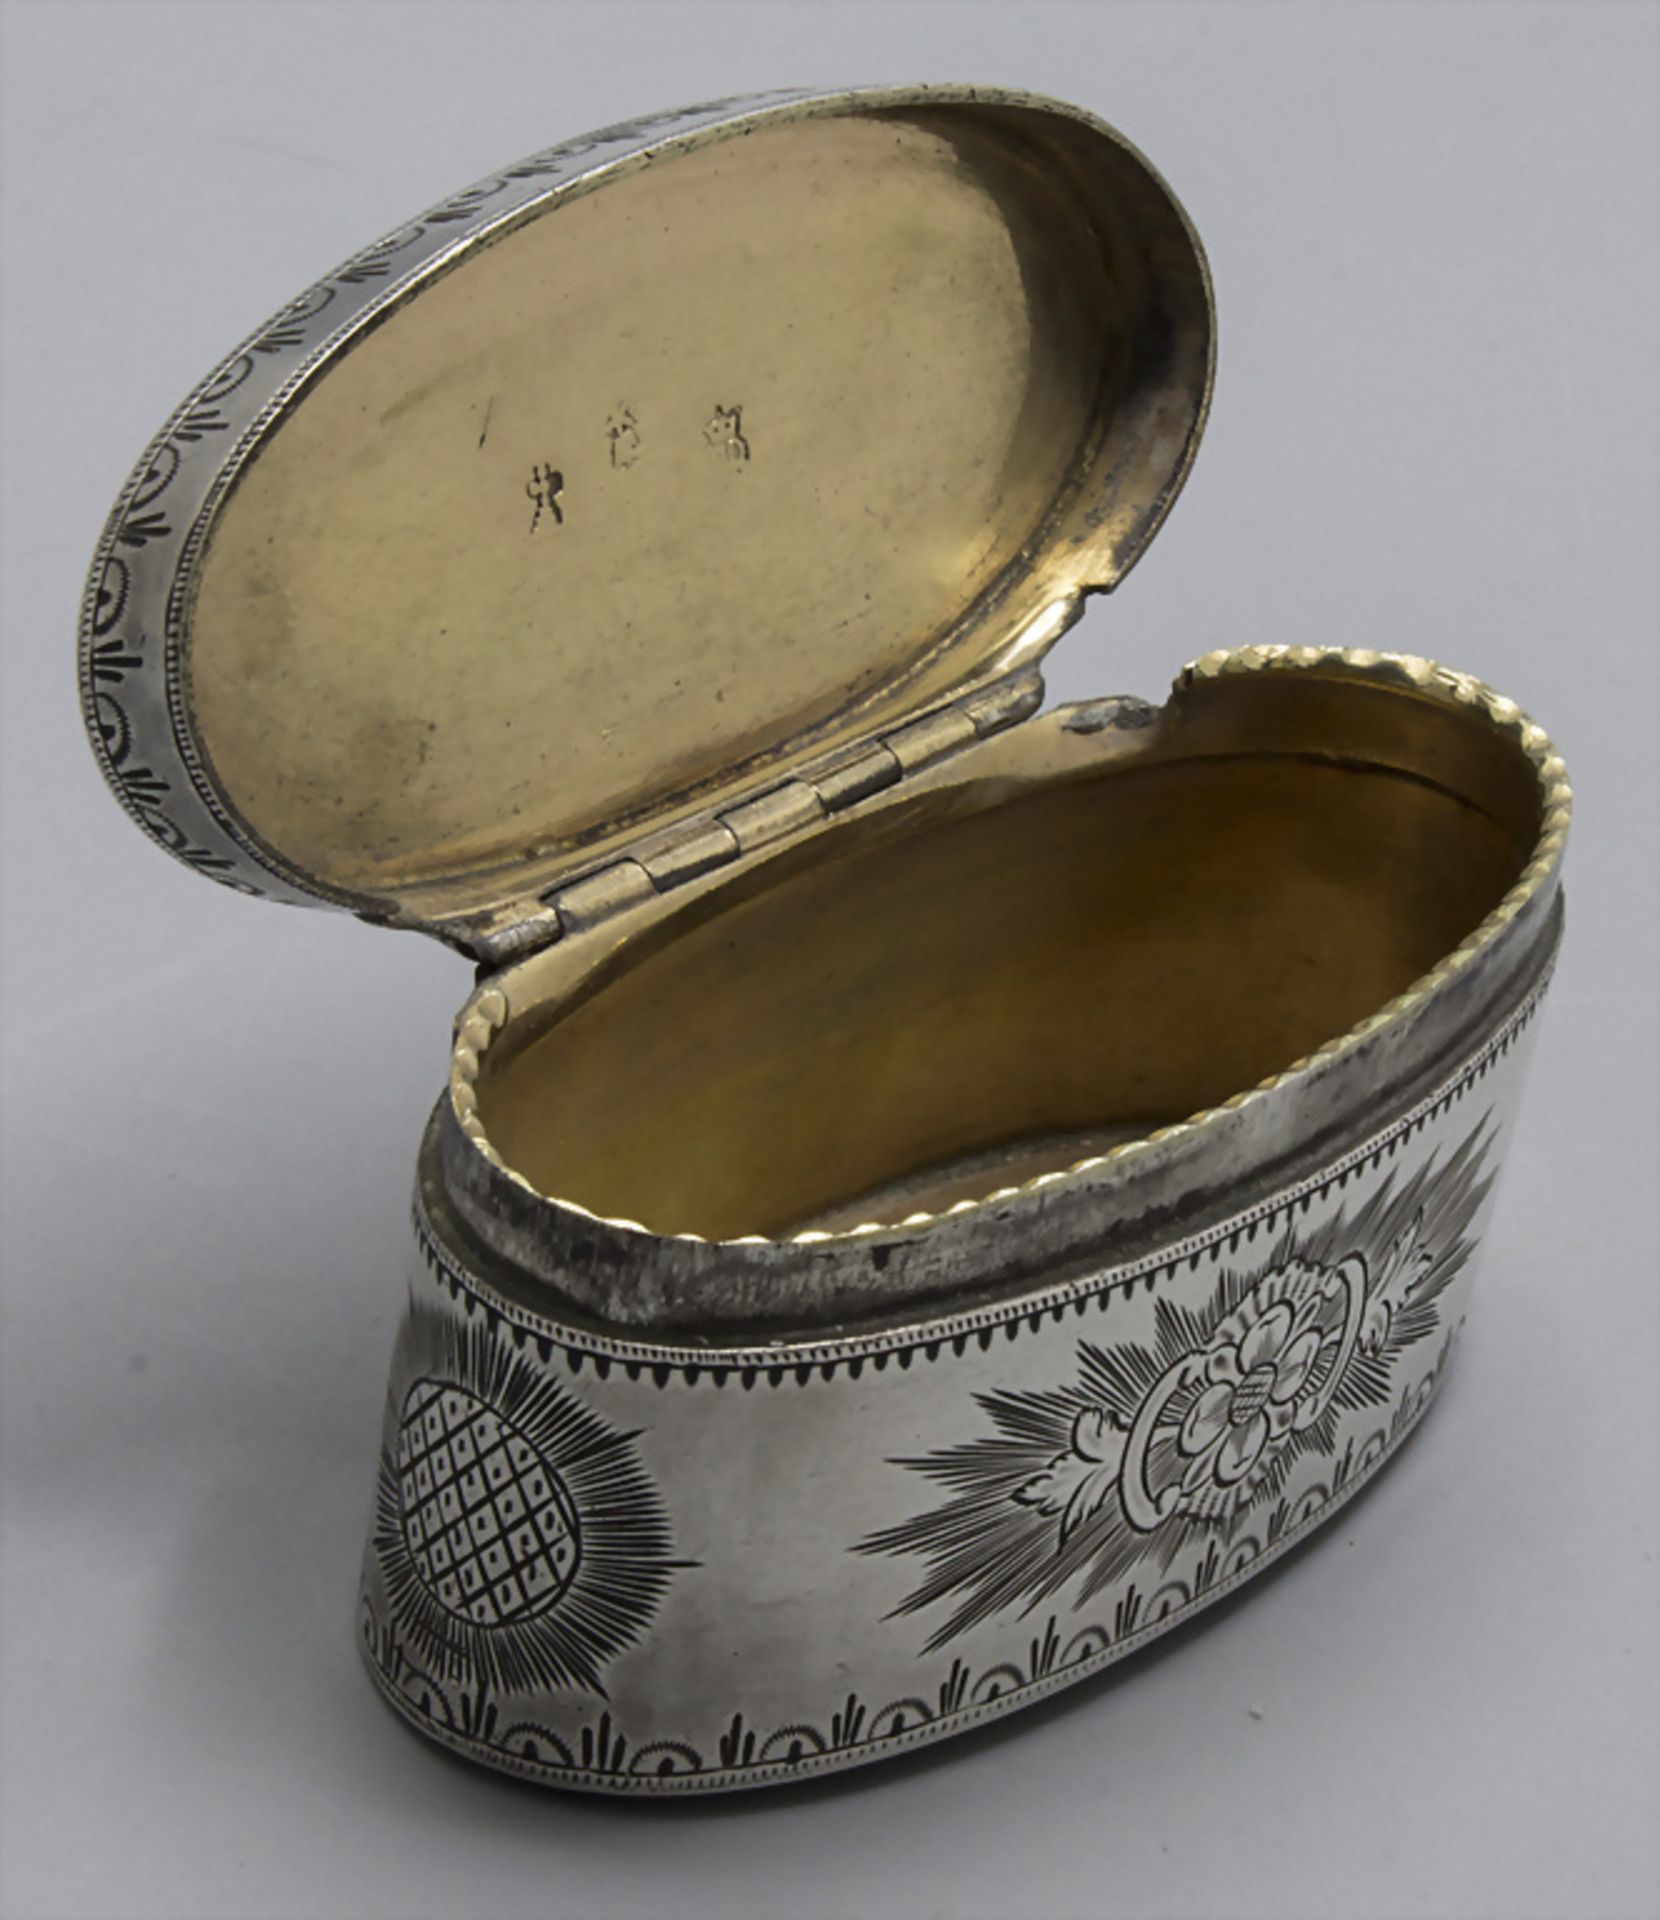 Tabatiere / Boite en argent massif / A silver snuff box, Ath, 1778 - Bild 3 aus 7